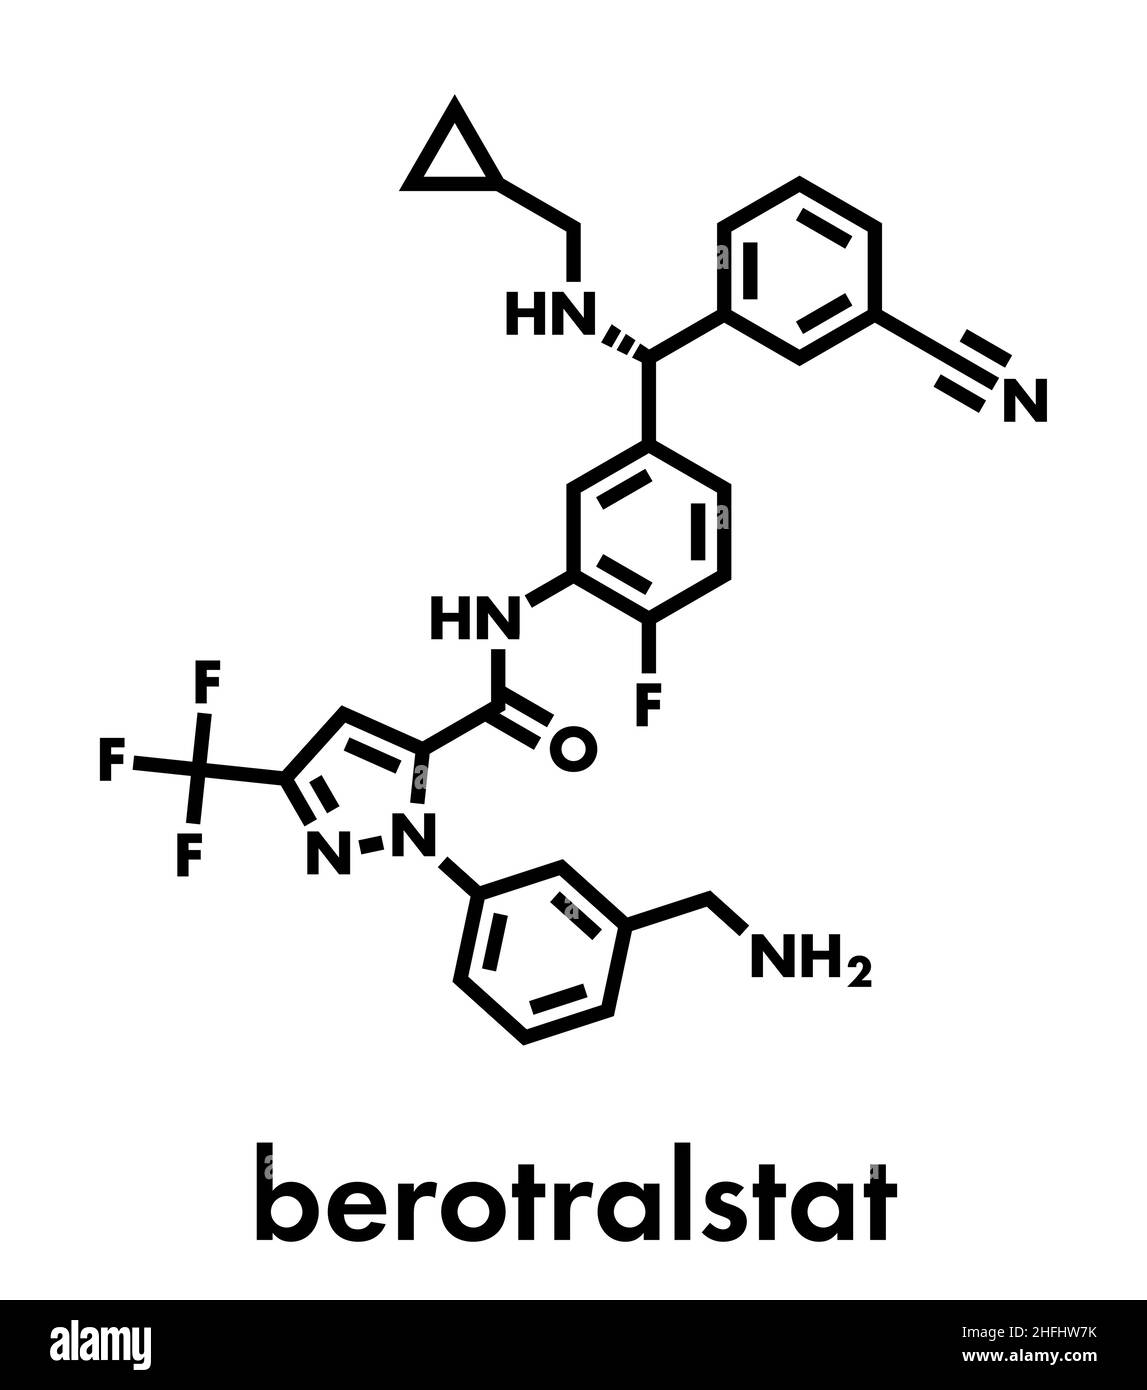 Berotralstat molécule de médicament d'angio-œdème héréditaire. Formule squelettique. Illustration de Vecteur